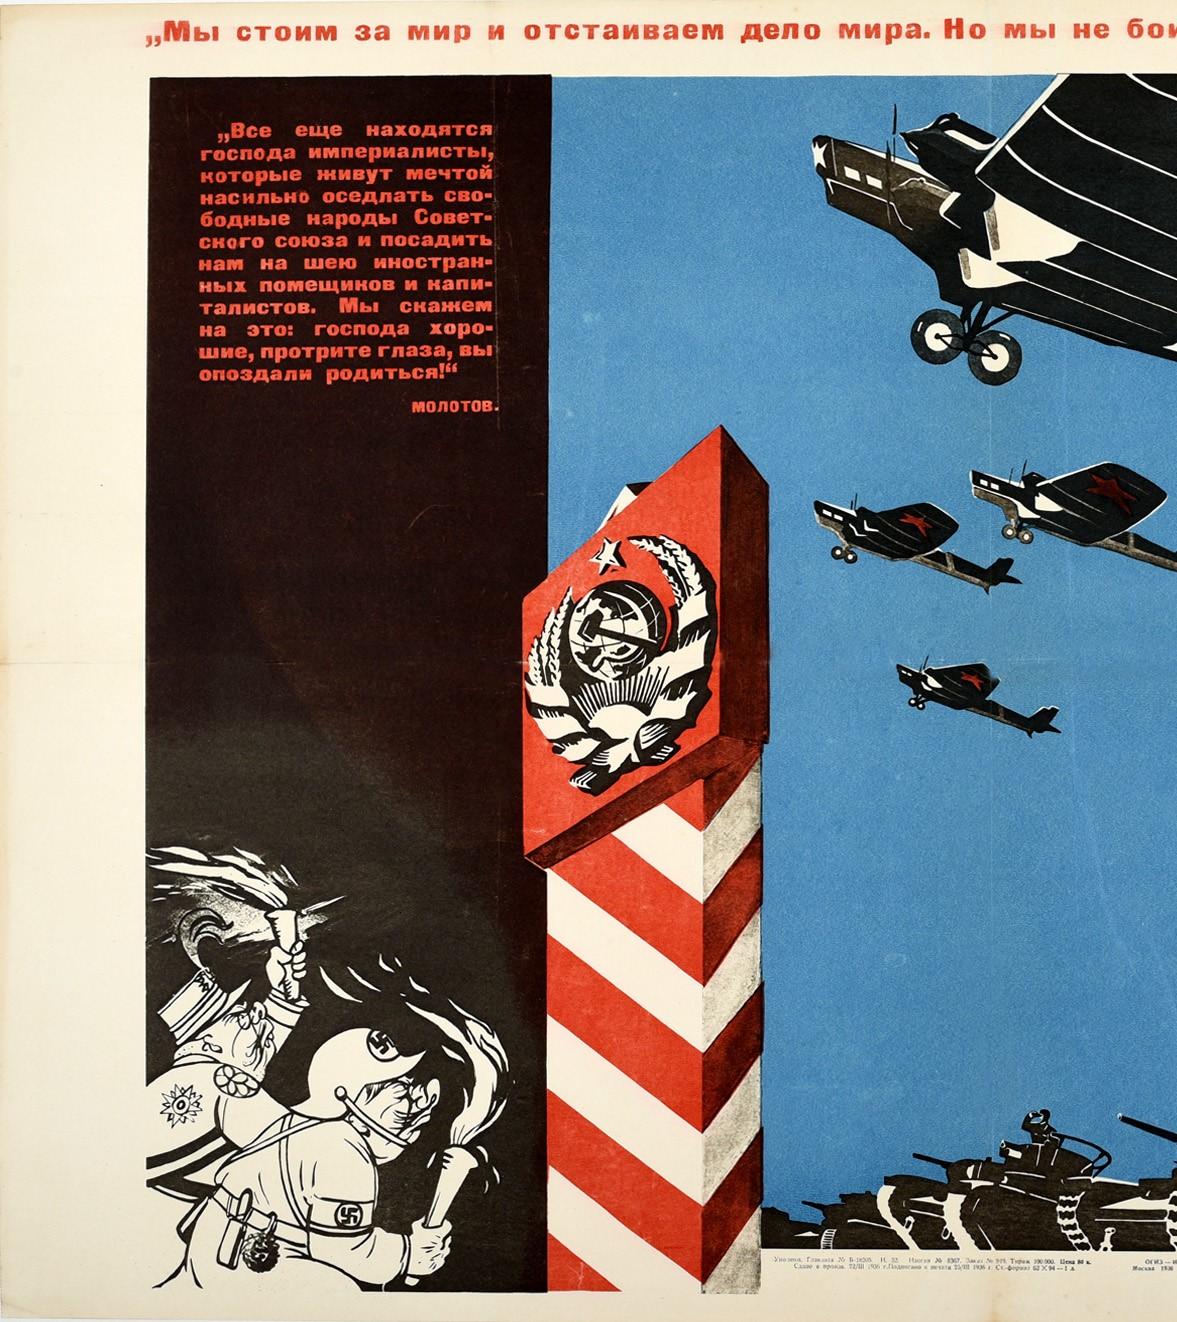 Originales sowjetisches Propagandaplakat - Wir stehen für den Frieden - mit einem großartigen Design, das ein Geschwader von Militärflugzeugen mit roten Sternen auf den Flügeln zeigt, die am blauen Himmel über einer Reihe von Panzern fliegen, die